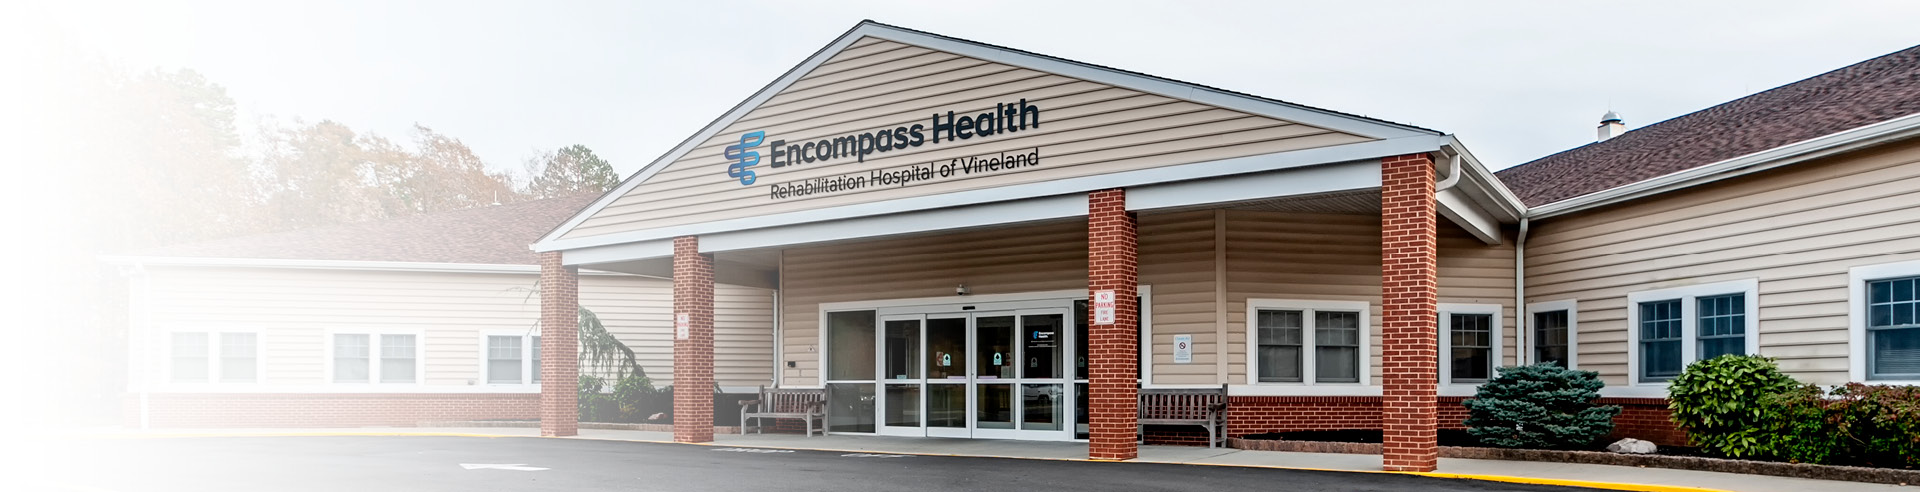 Encompass Health Rehabilitation Hospital of Vineland exterior